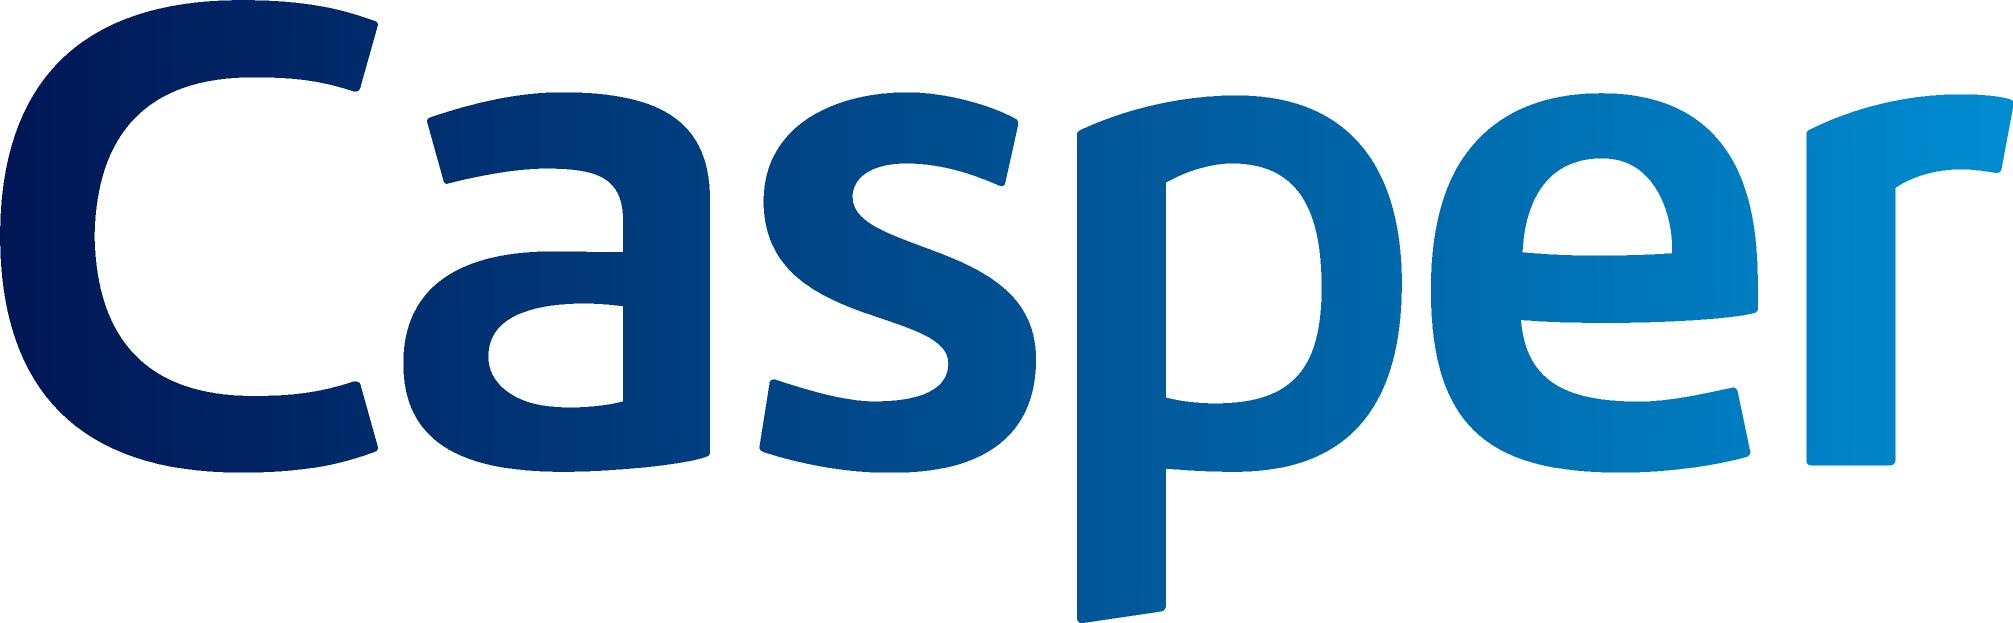 CASPER Logo photo - 1